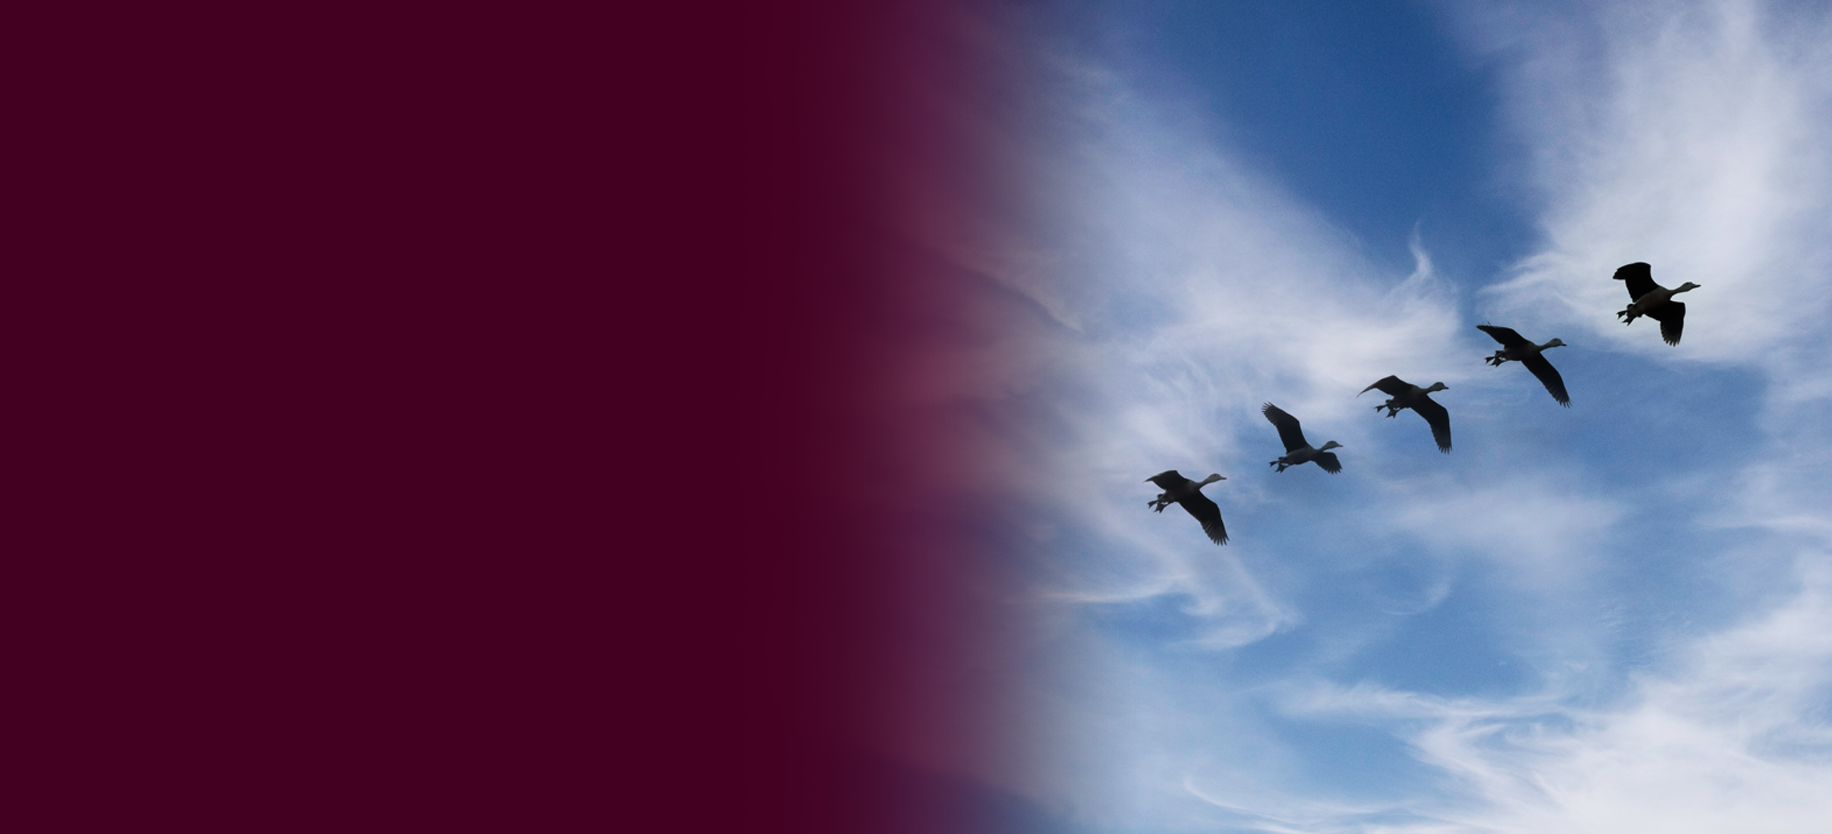 Whistling ducks flying across a blue sky